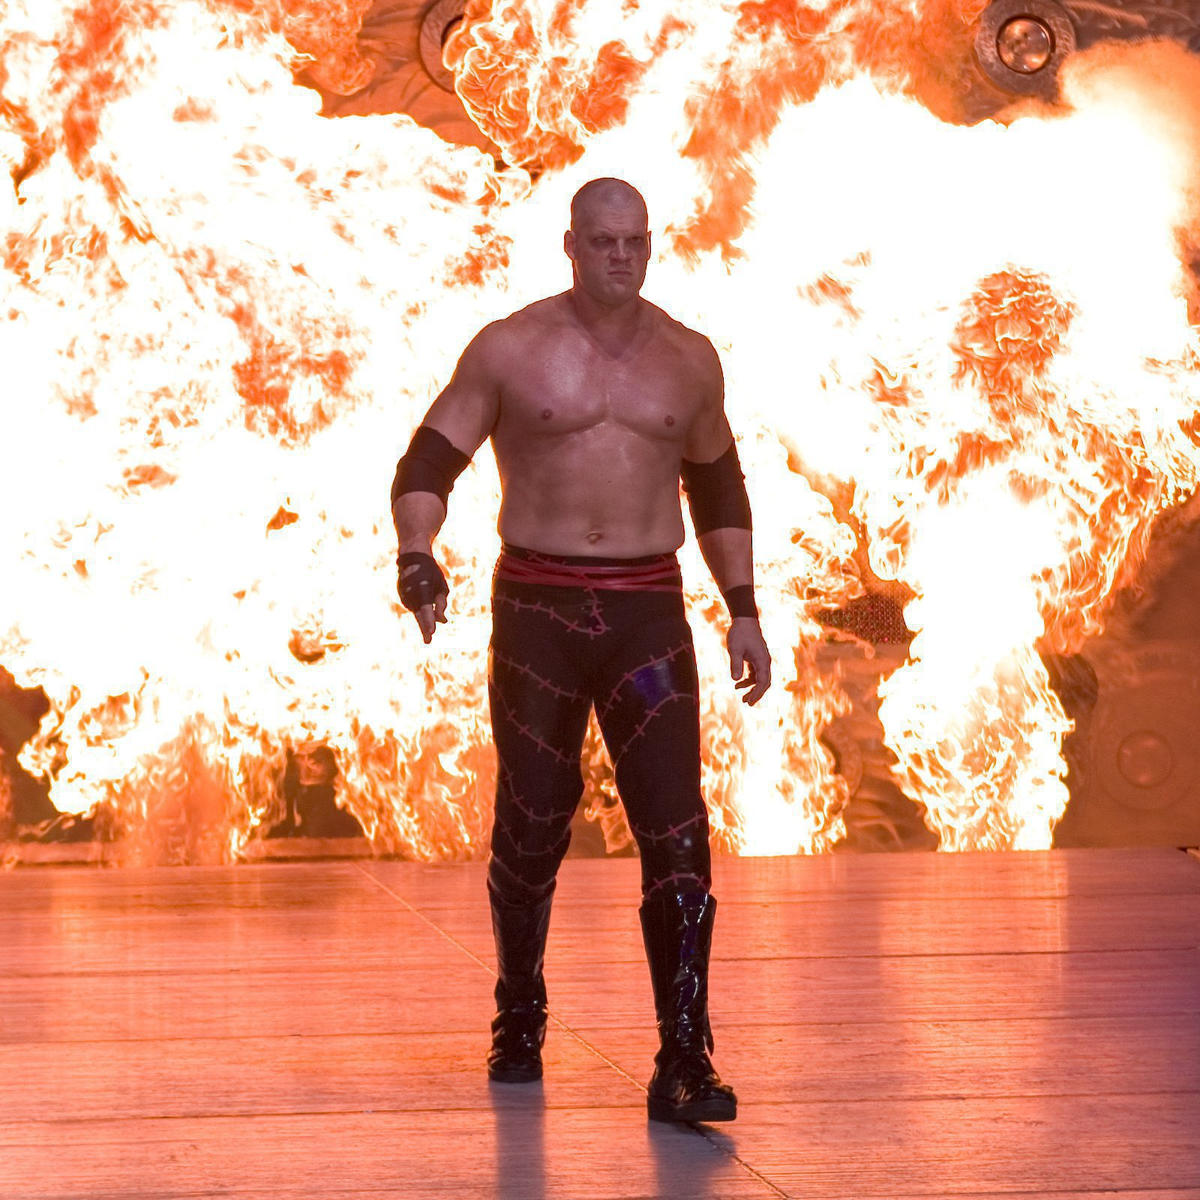 The Big Red Monster Kane - (Fonte: WWE.com)